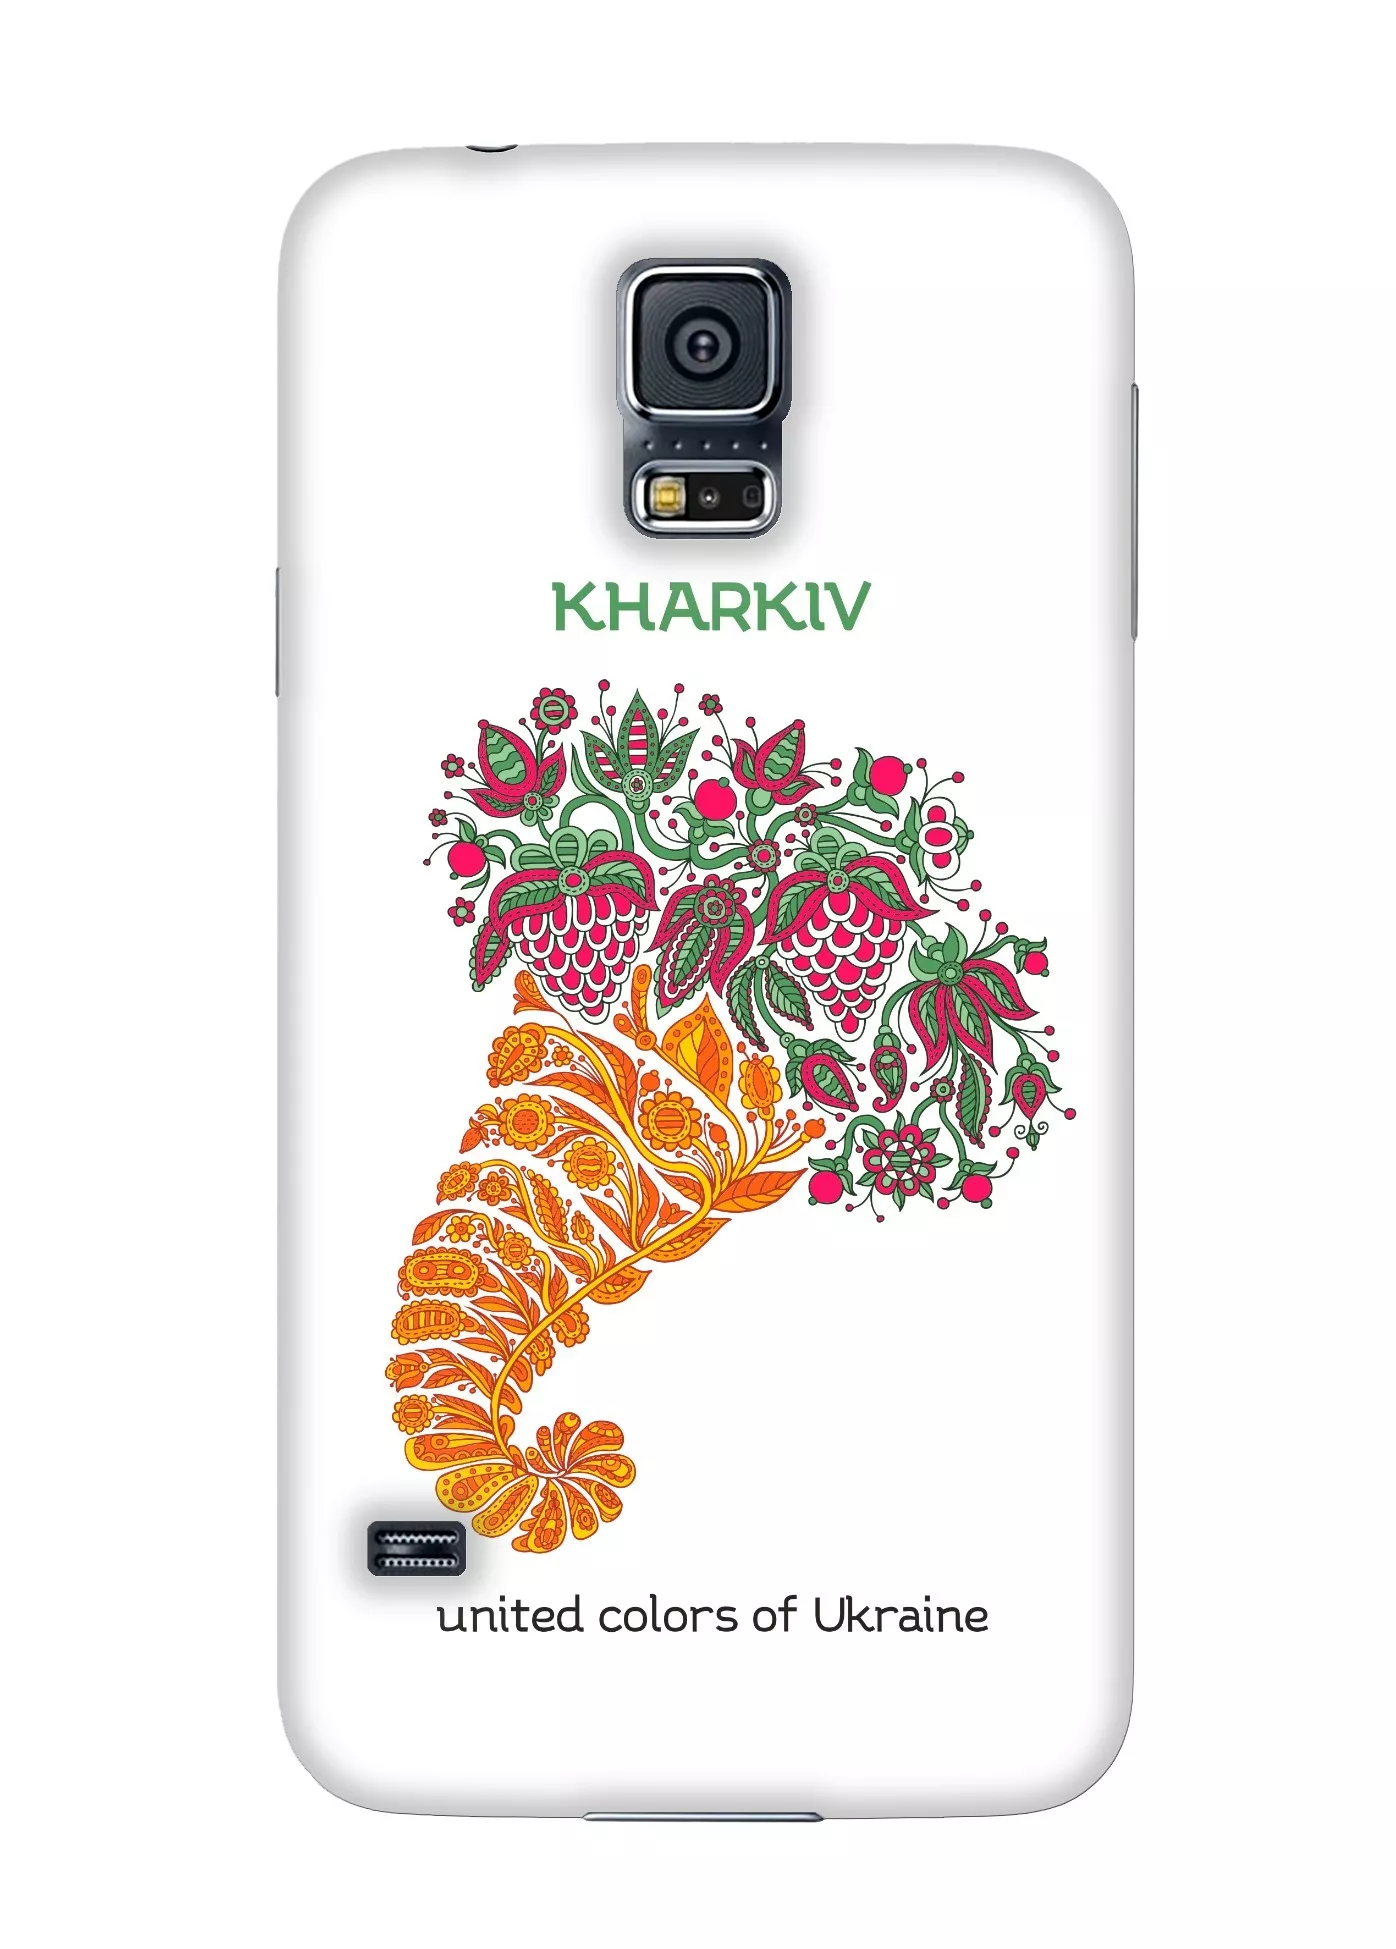 Накладка для Galaxy S5 Mini - Харьков